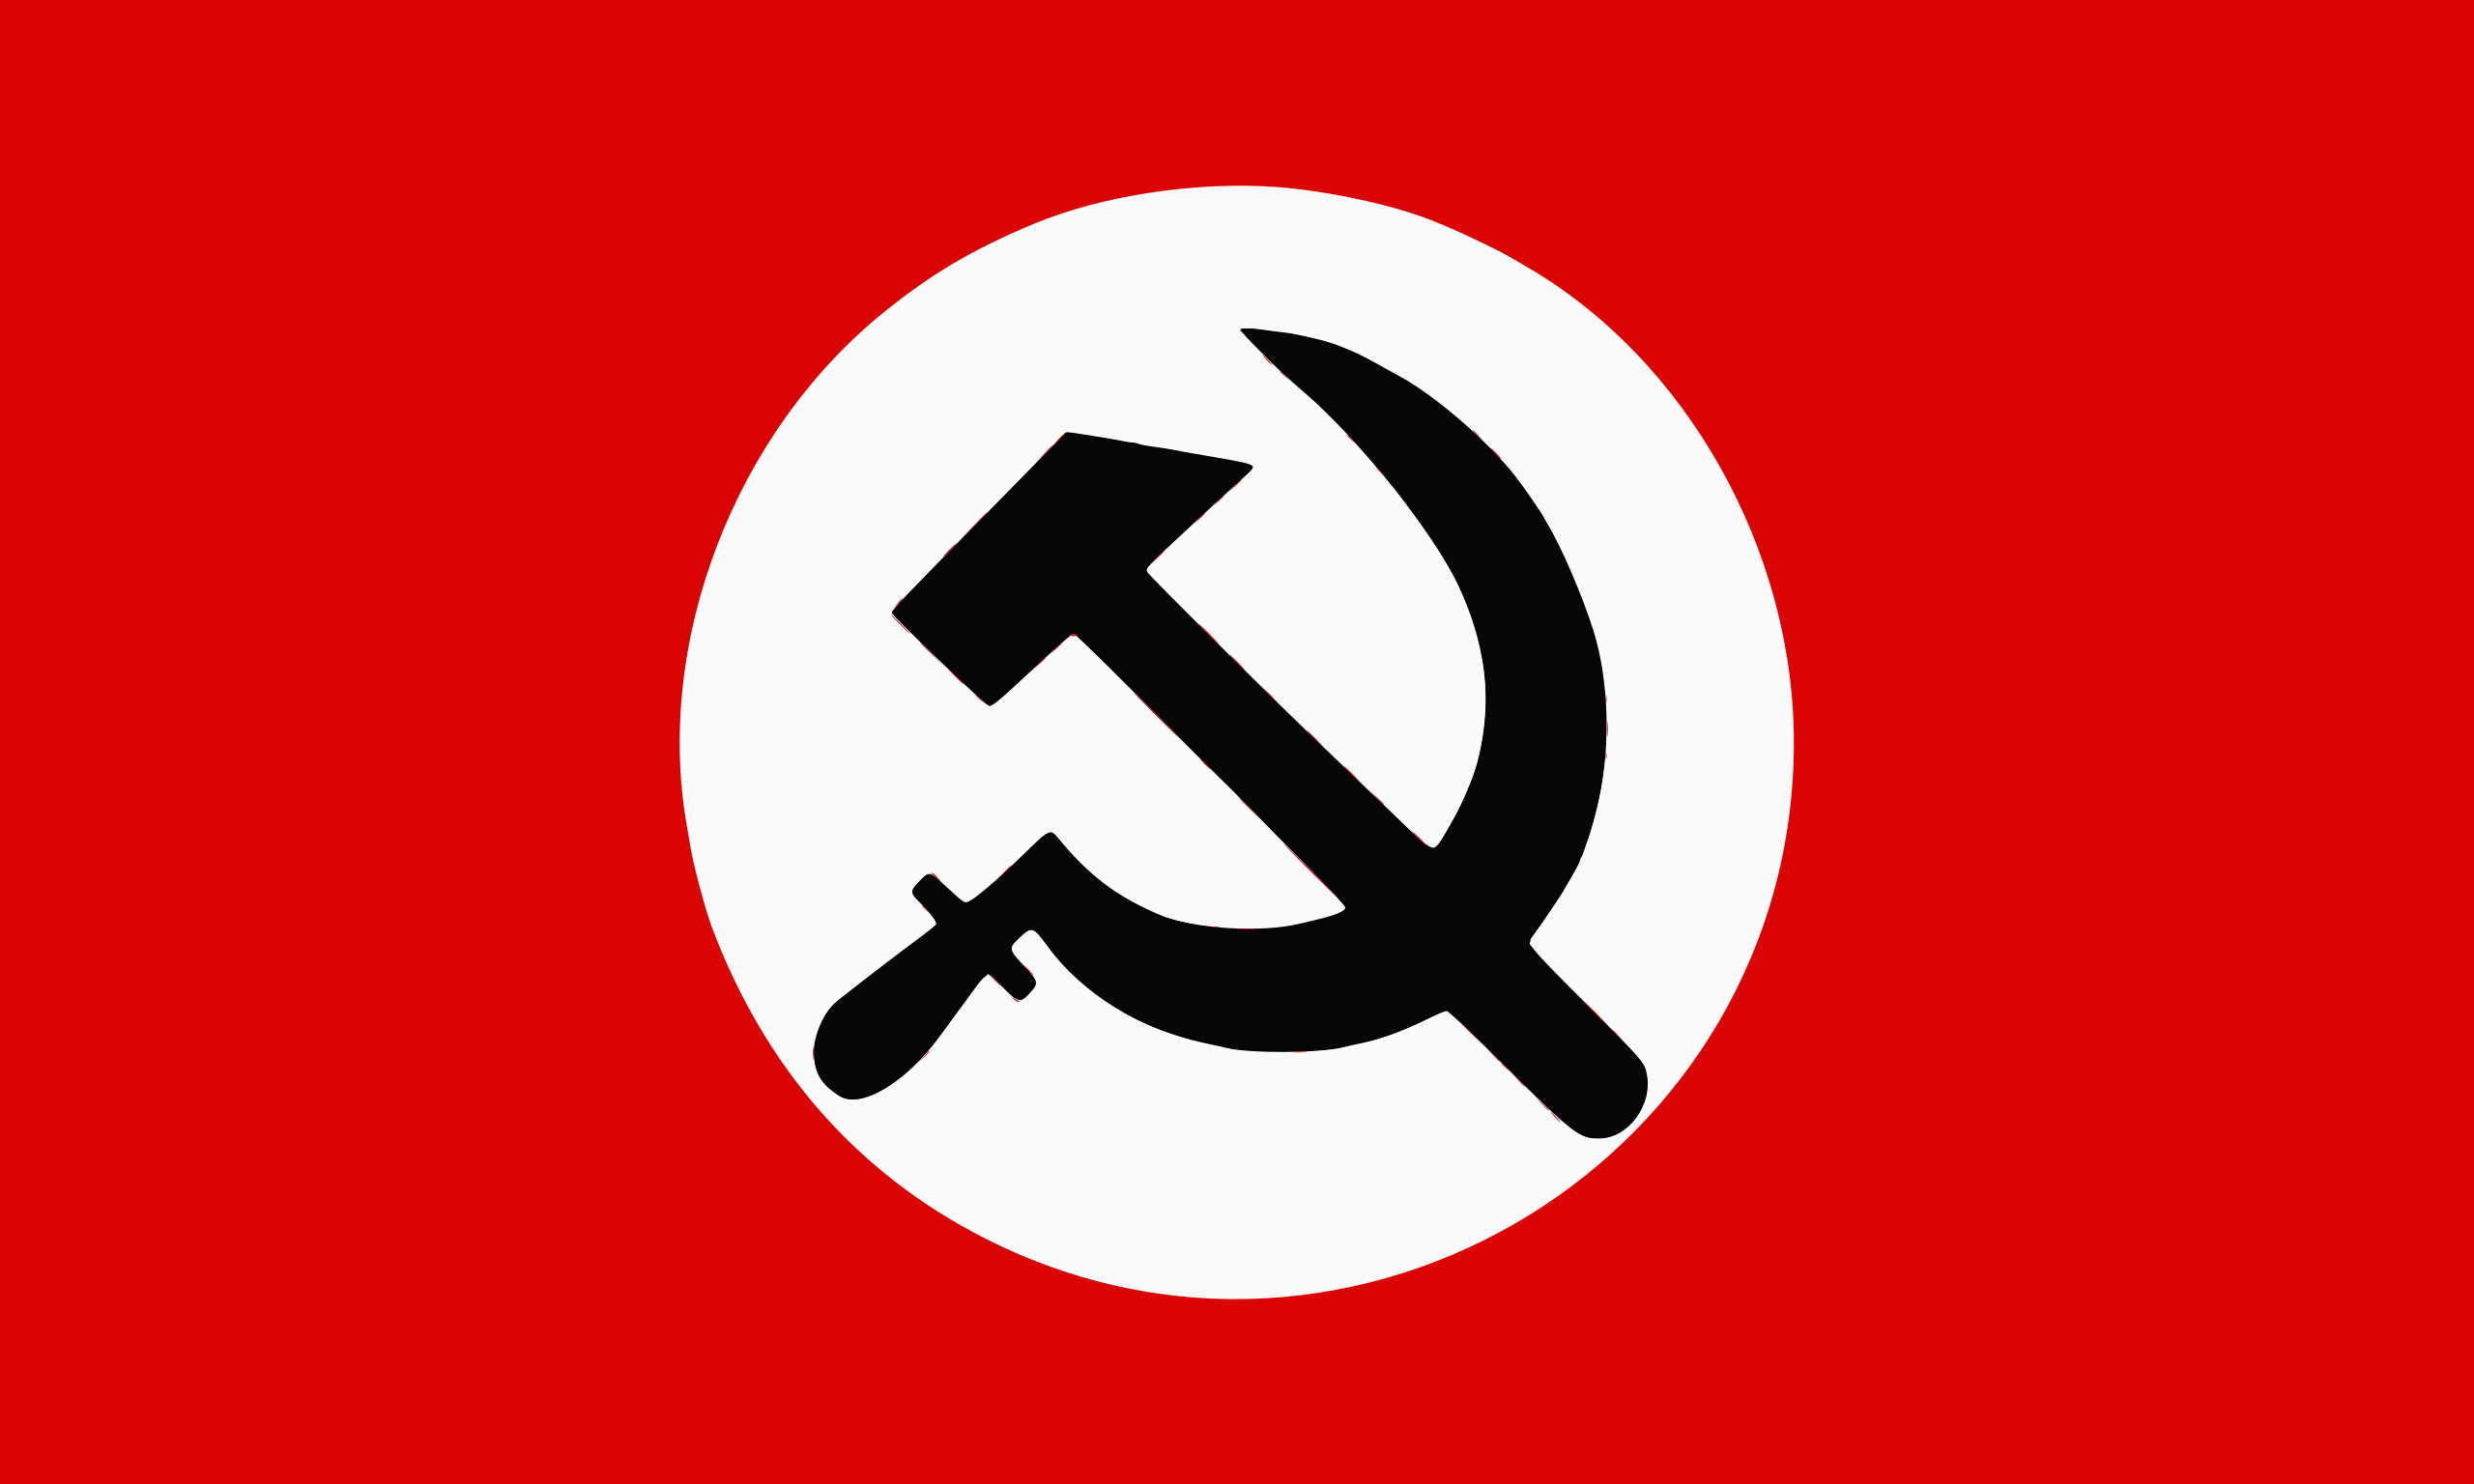 Un drapeau national bolchevique. Il présente un fond rouge avec un cercle blanc en son centre. Dans le cercle blanc se trouve un marteau et une faucille noirs.